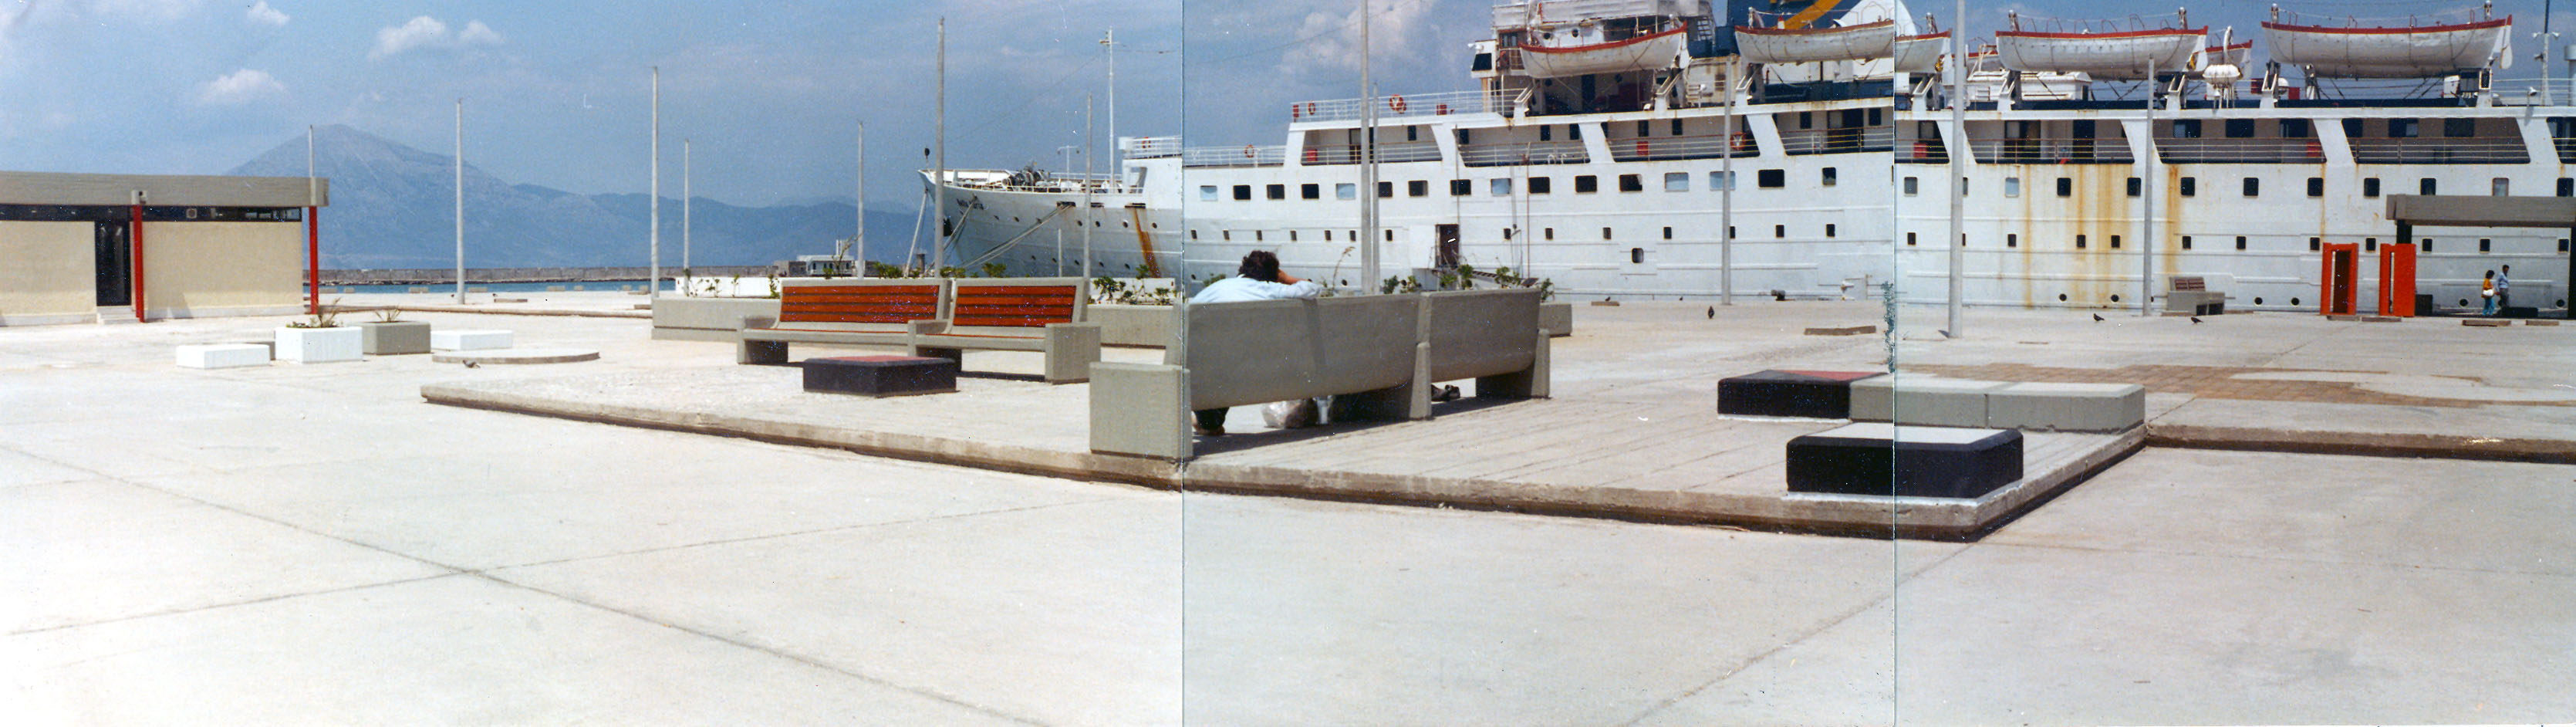 Φωτογραφίες έργων - Architectural Portfolio Pier at the St Nicholas' Harbour, Patra, Greece